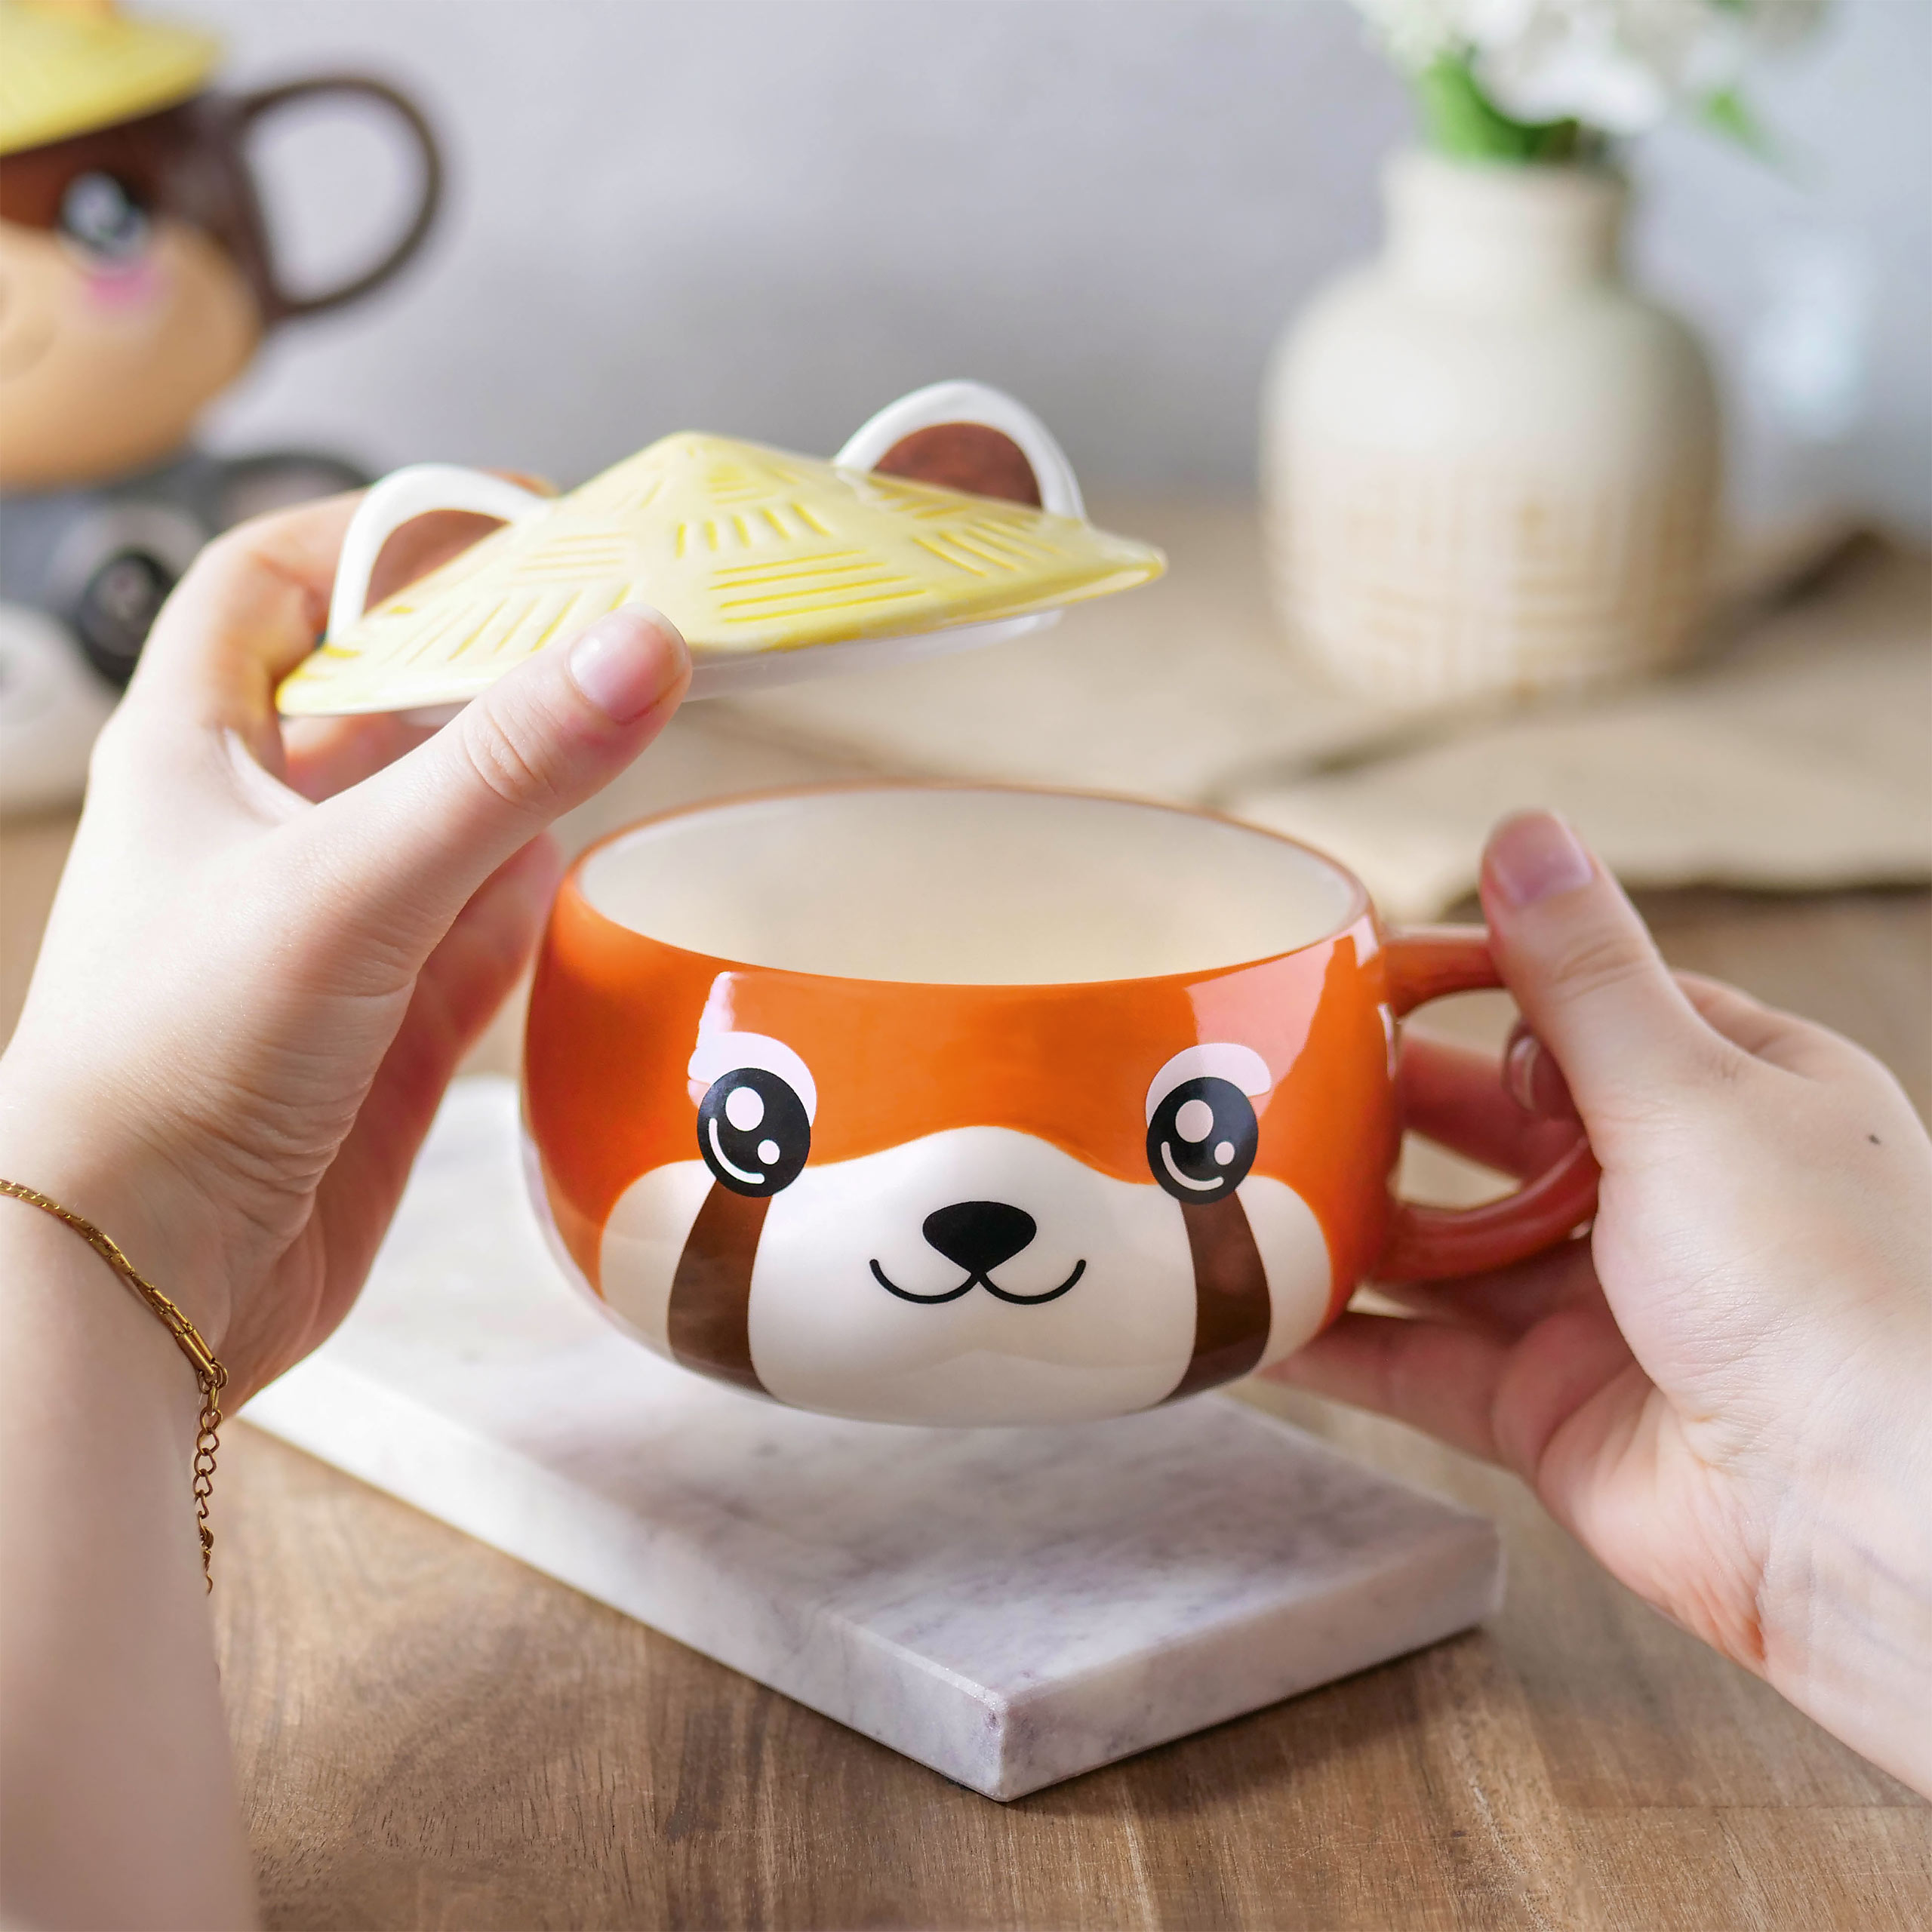 Rode Panda Kawaii Mok met Deksel voor Anime Fans